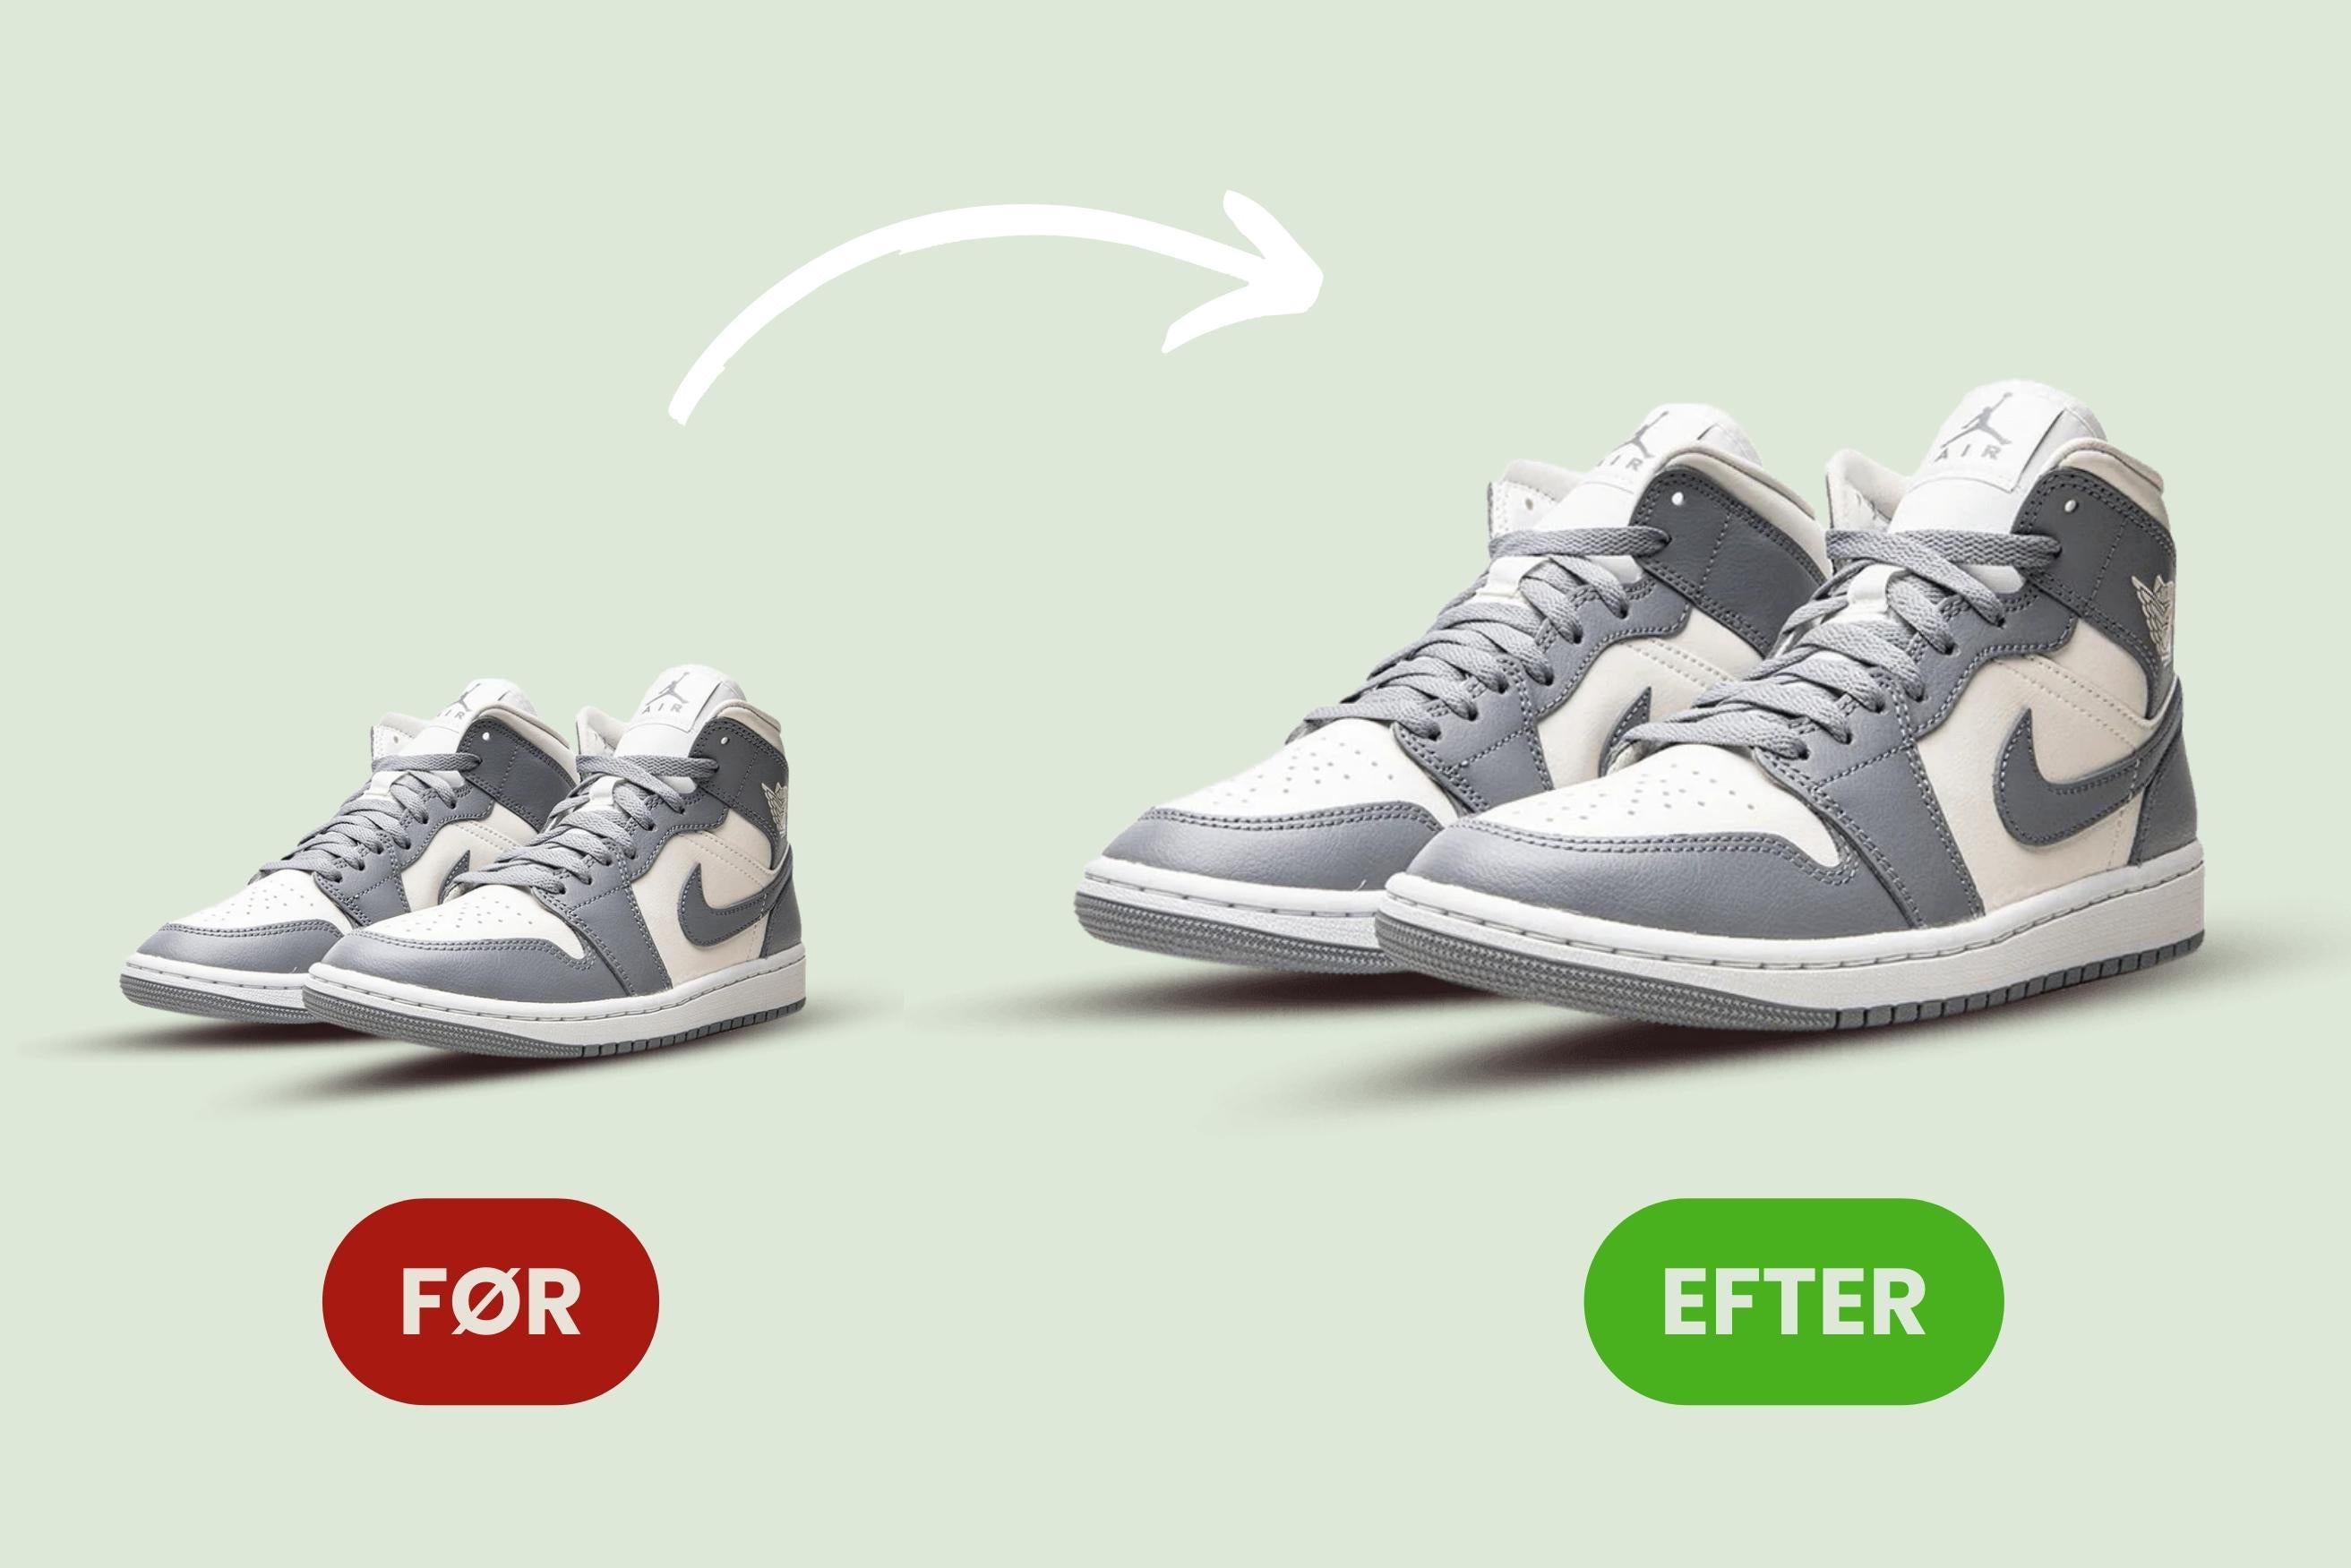 Bærbar fraktion Hej hej Hvordan udvider man sine sko, uden at få ondt i fødderne? – Sneakerzone